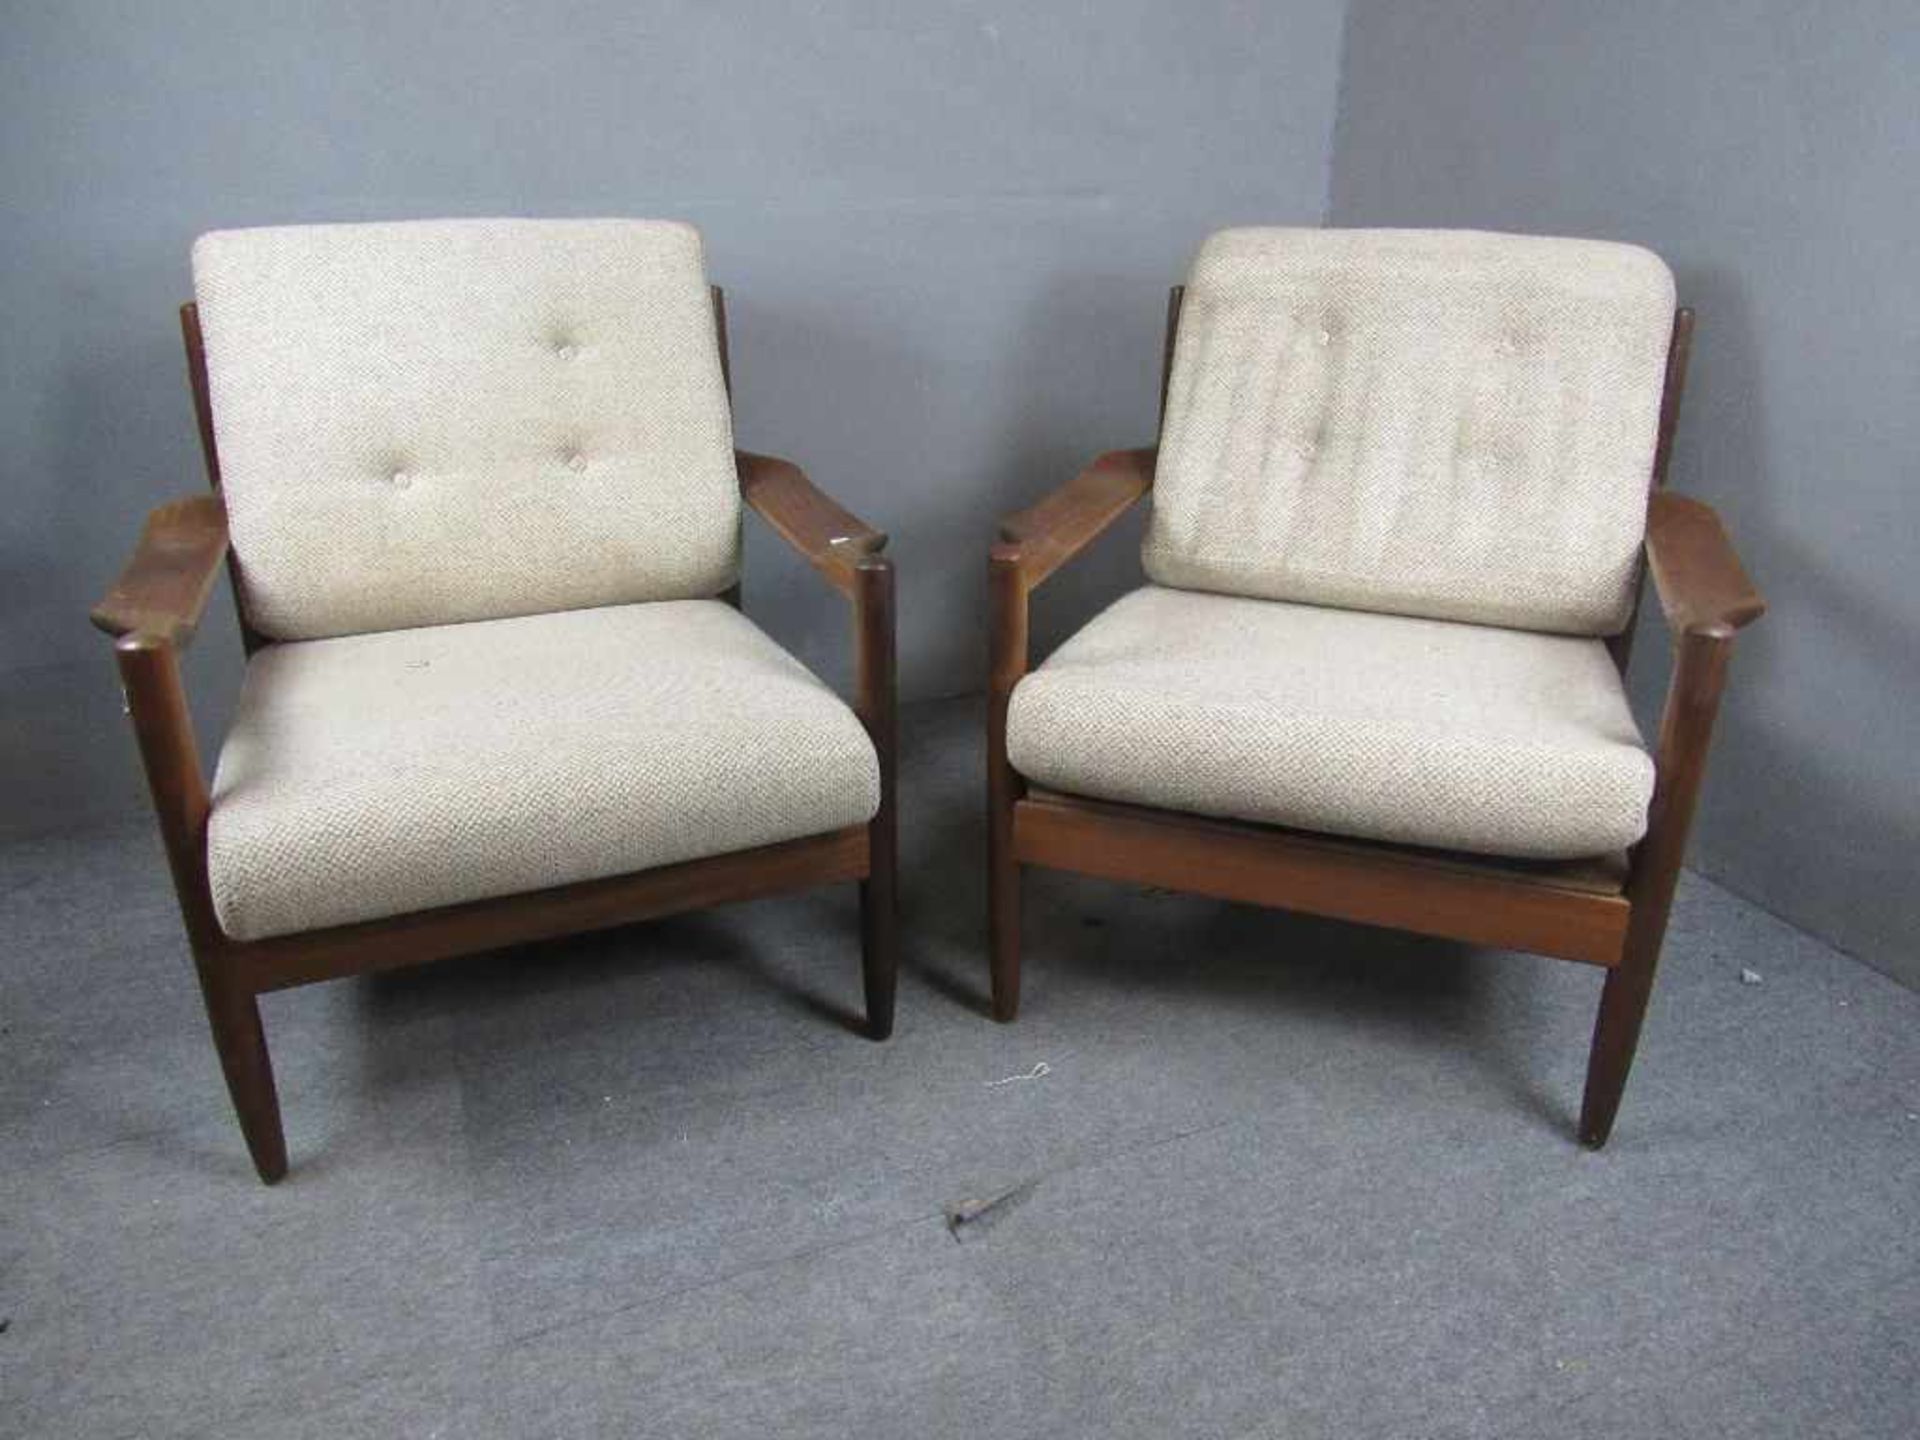 Dänisch Design zwei Lounge Armlehnenstühle sehr schöner wohnfertiger Zustand Teak 60er Jahre<br